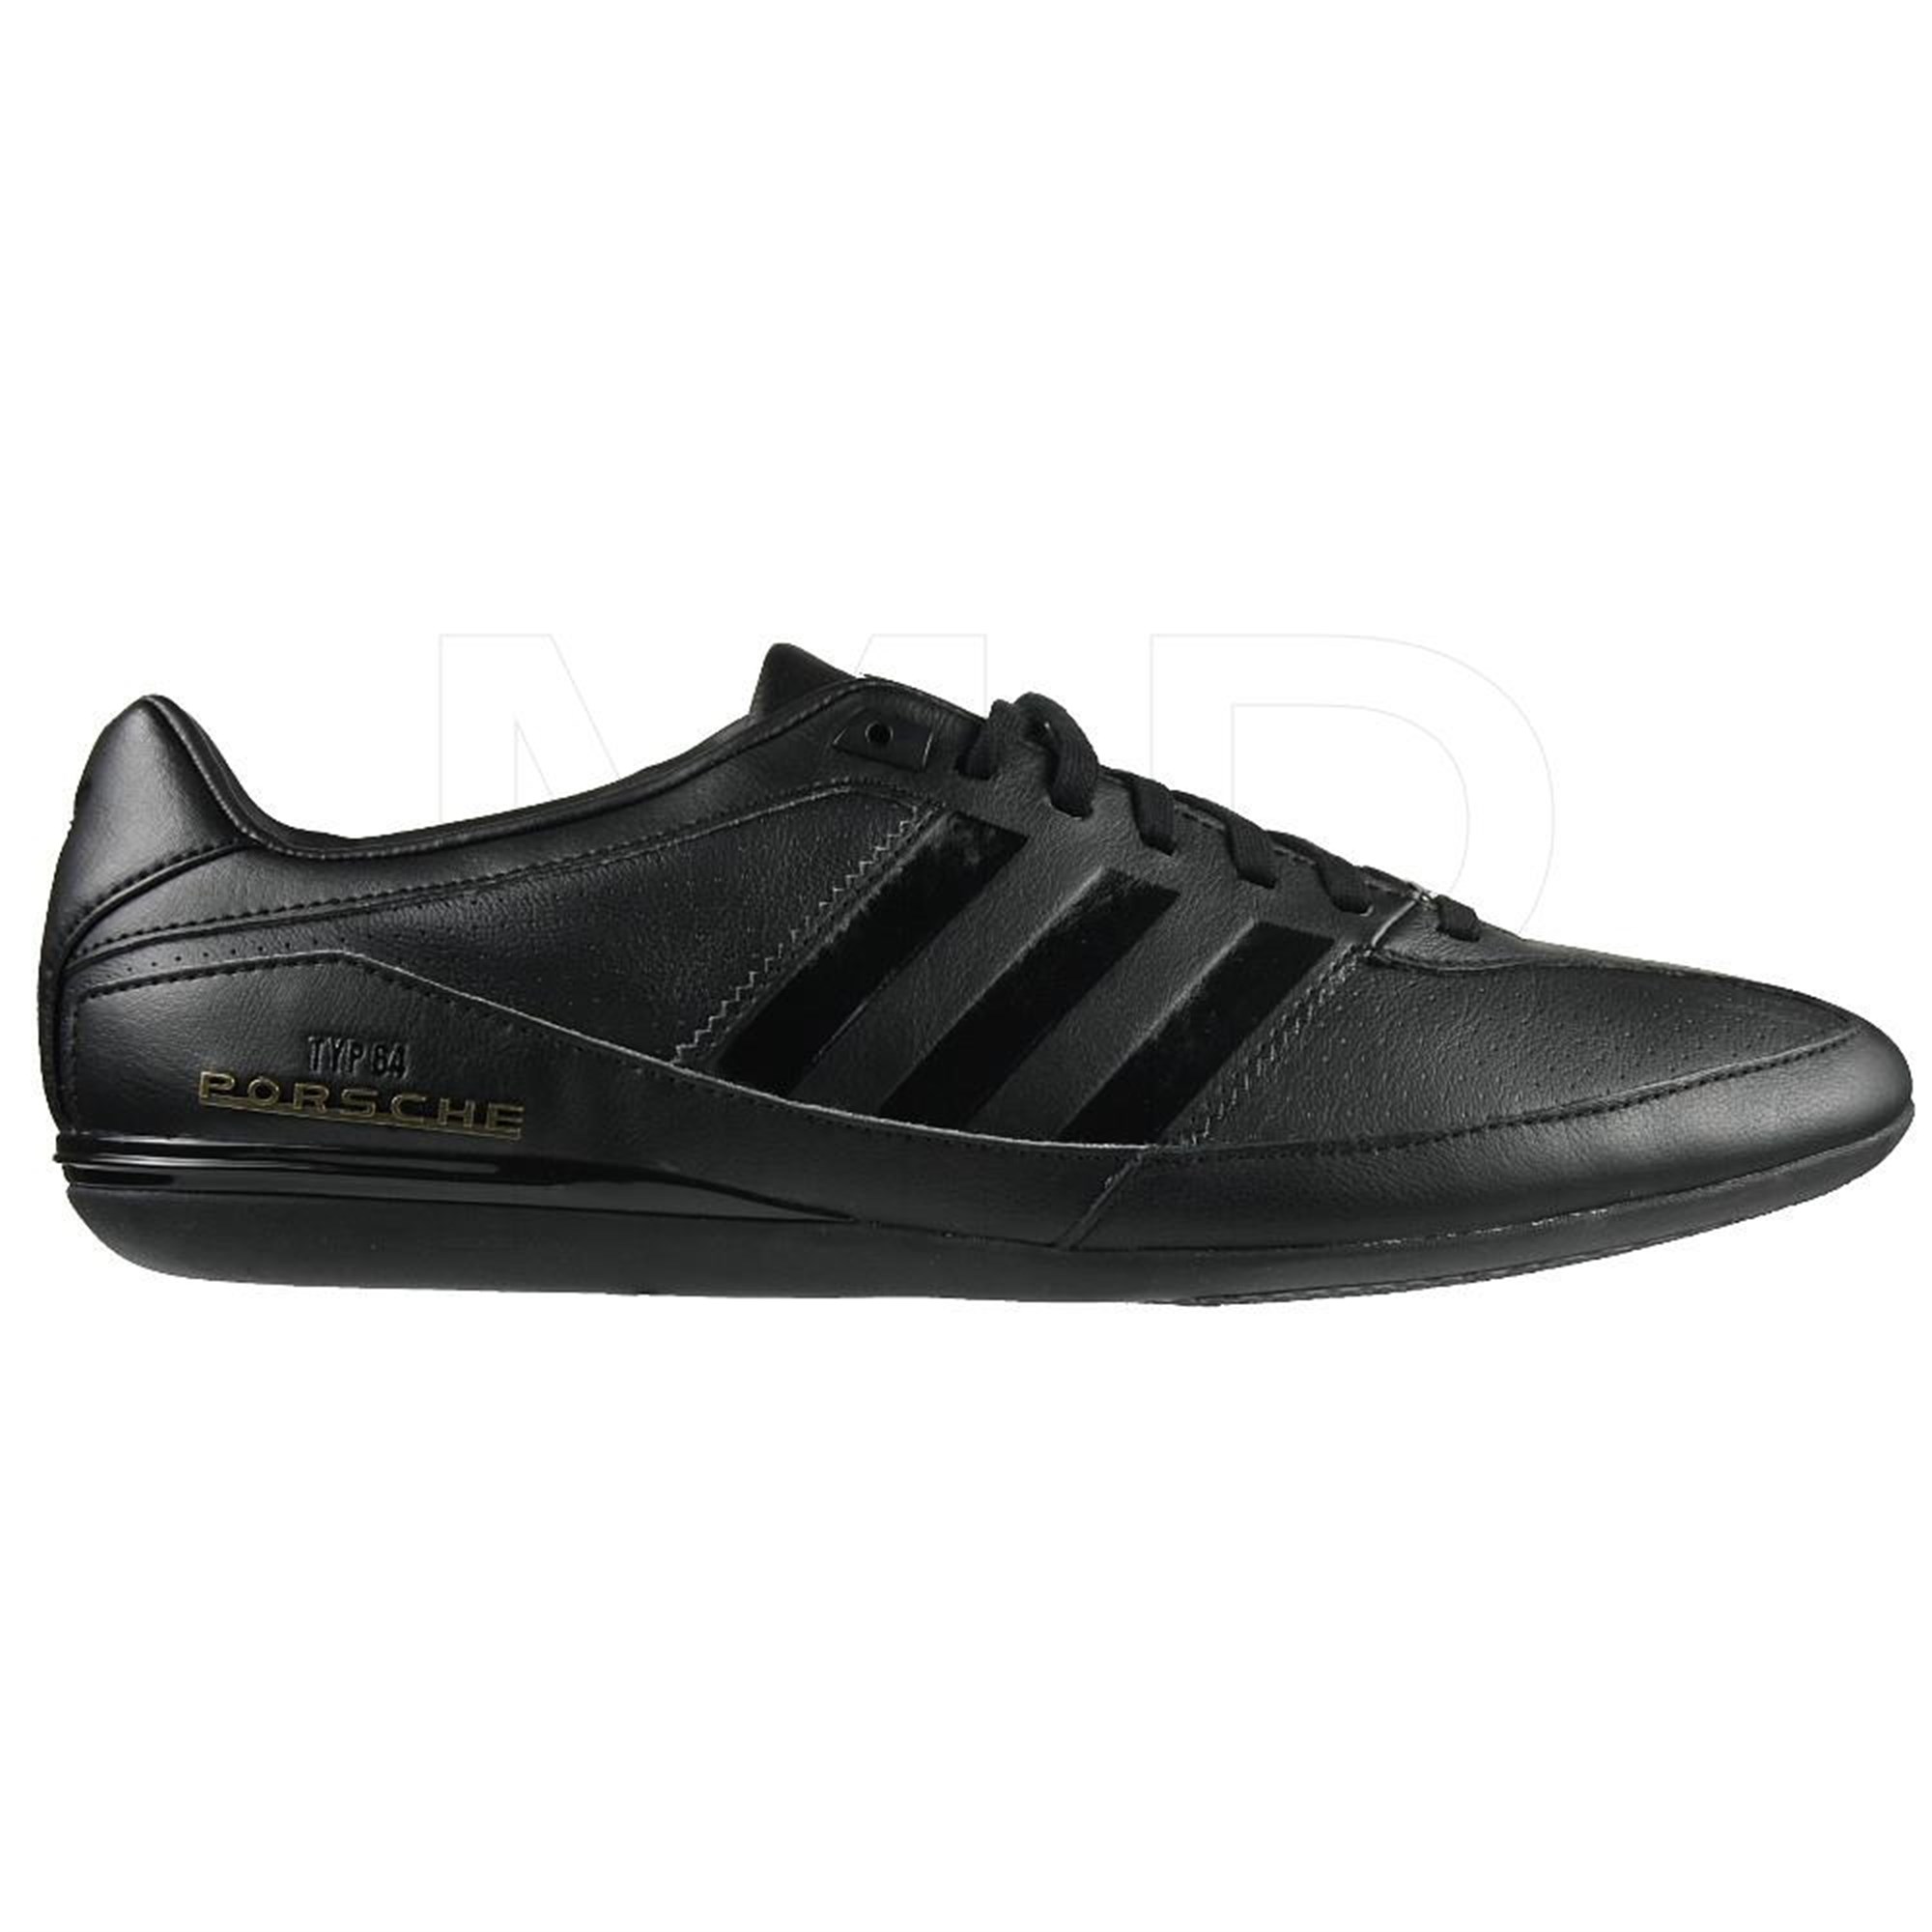 adidas porsche typ 64 erkek siyah spor ayakkabı